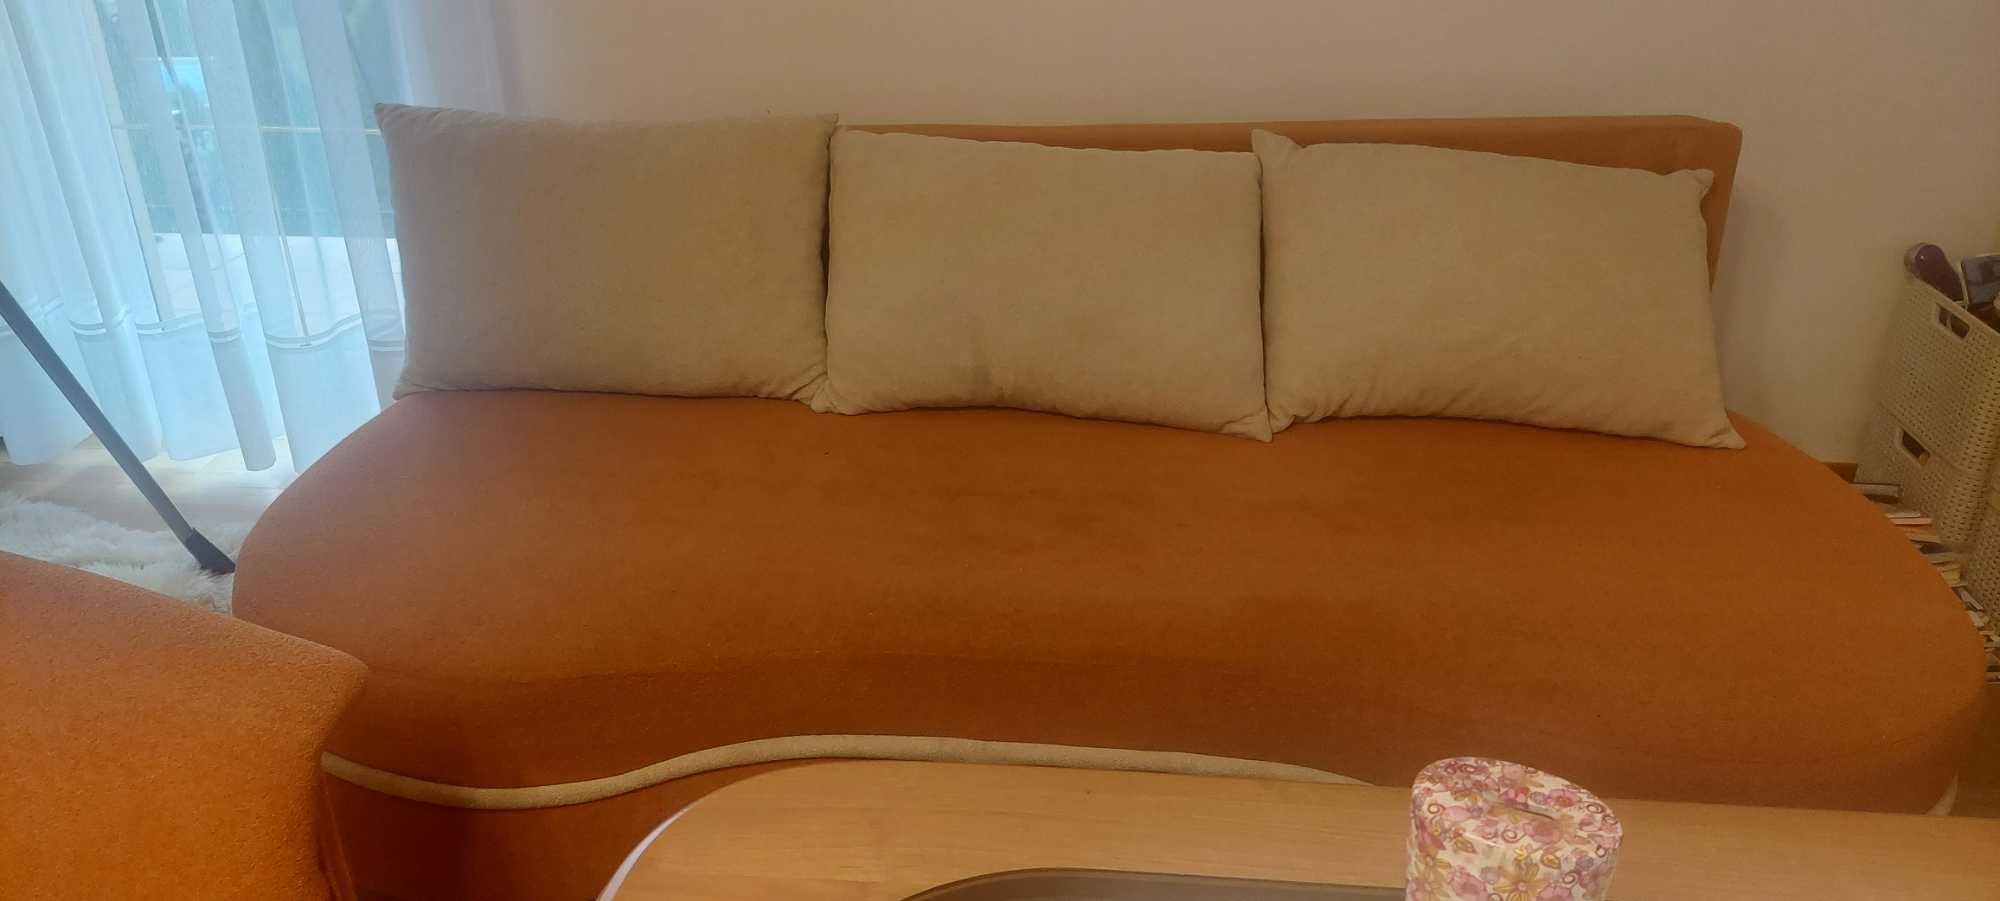 Zestaw: kanapa, dwa fotele, ława, pufa oraz dywan. Stan bardzo dobry.